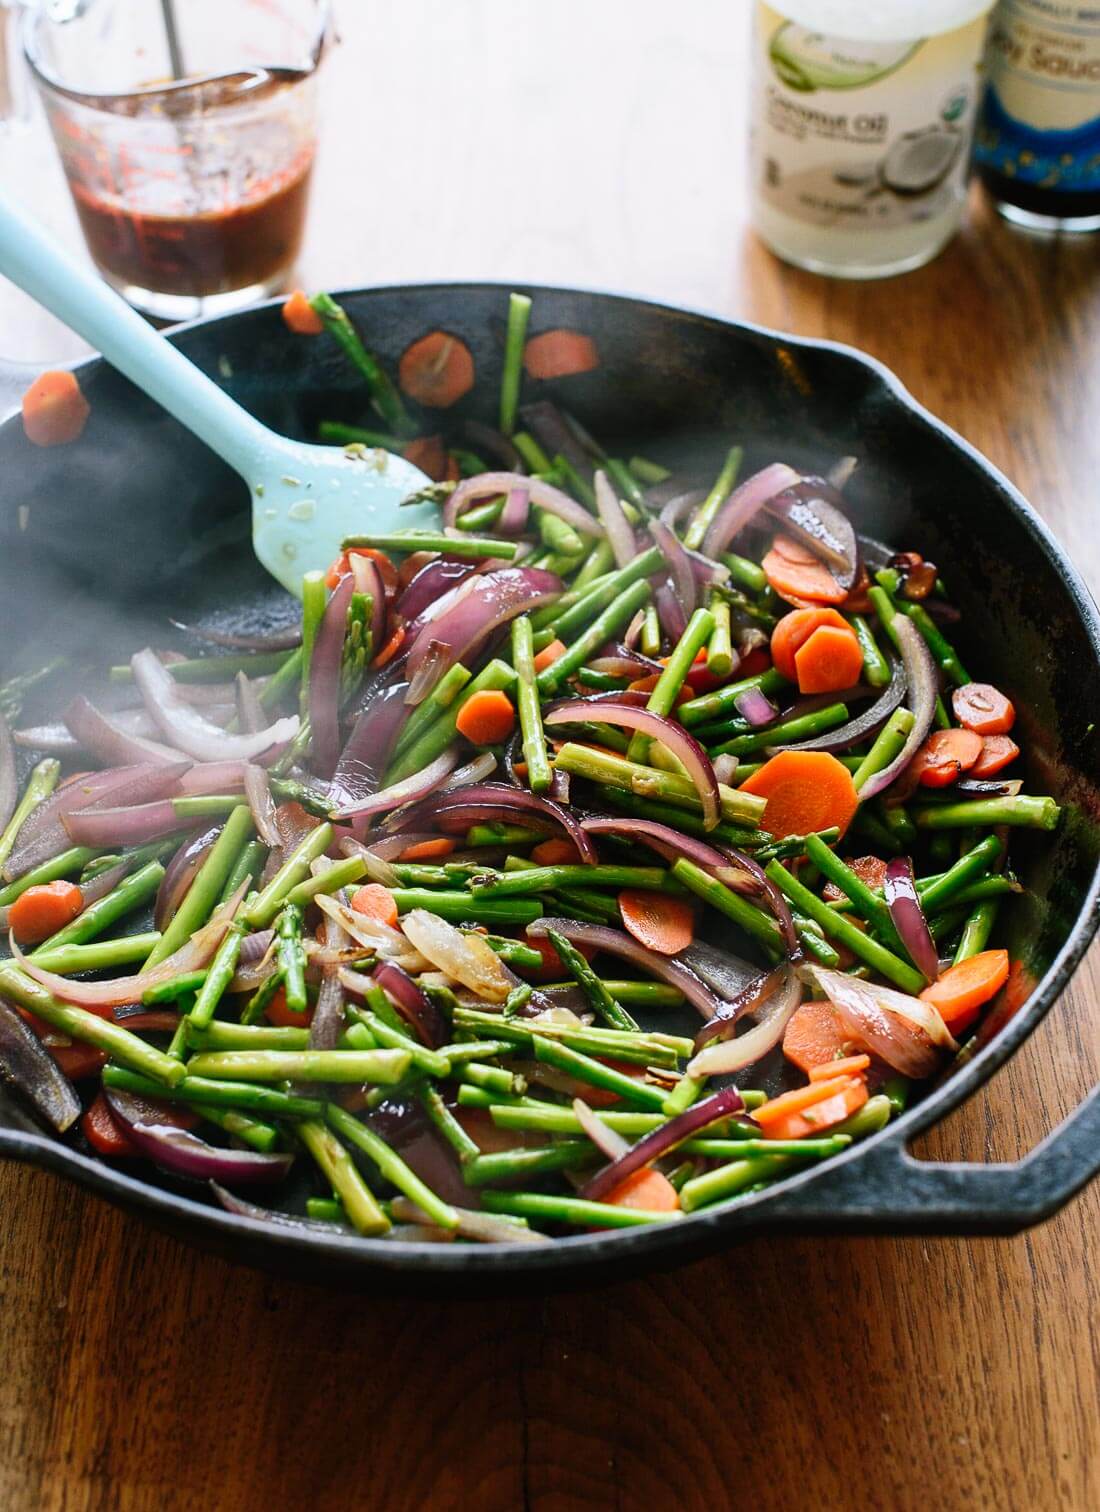 ¡Esta receta de salteado de verduras se prepara en poco tiempo!  Para convertir esta guarnición en una comida completa, sírvala con arroz integral y la proteína que prefiera.